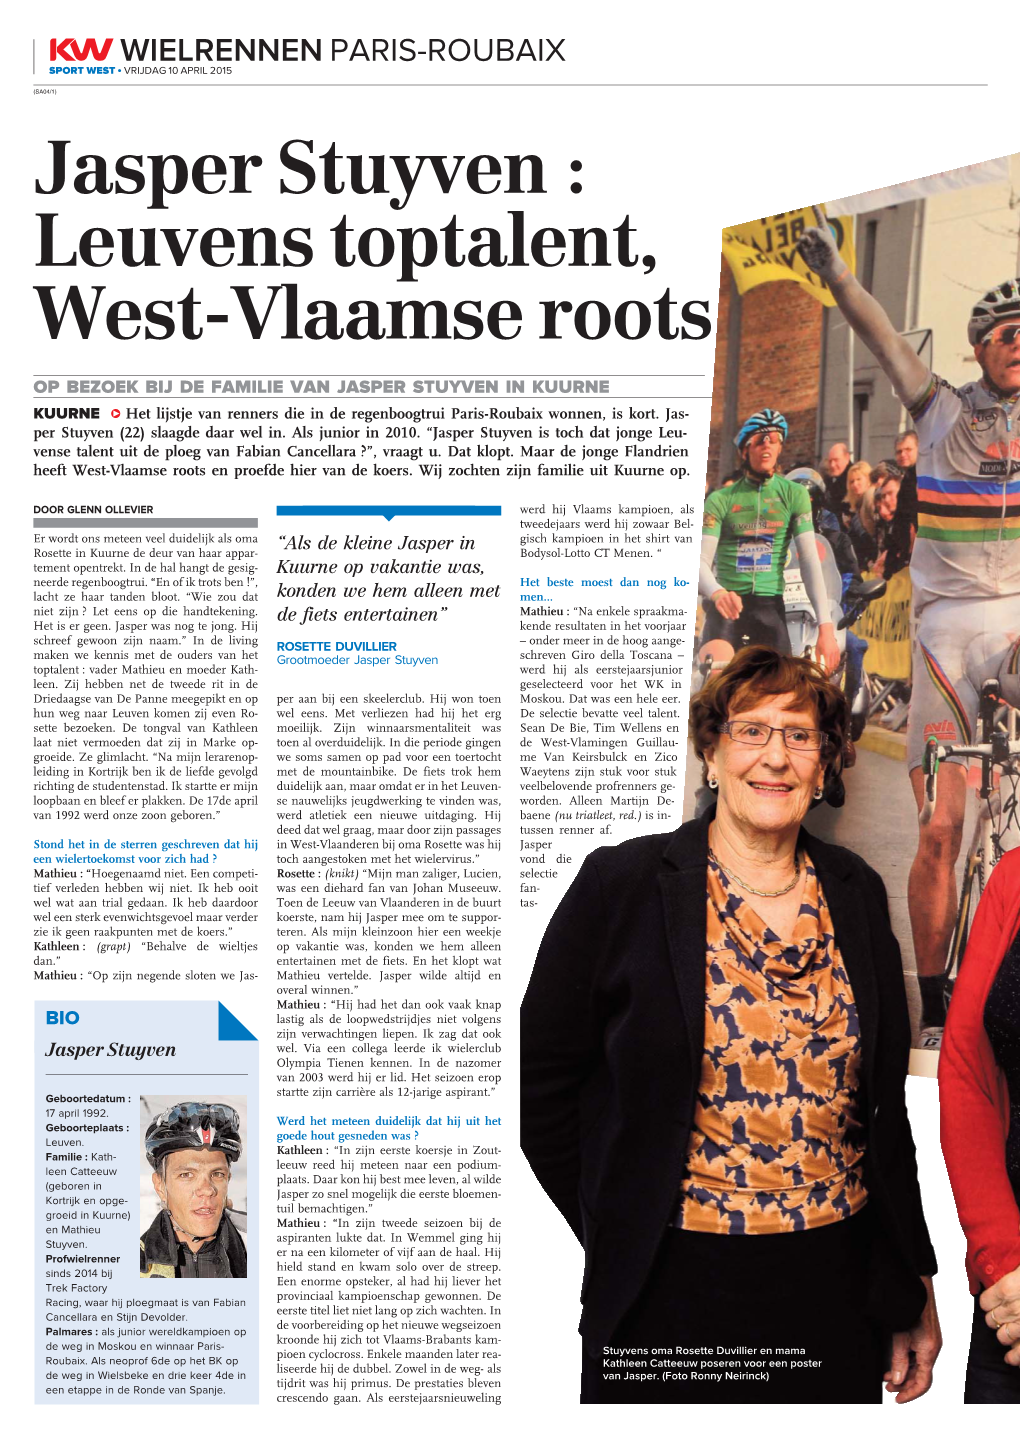 Jasper Stuyven : Leuvens Toptalent, West-Vlaamse Roots